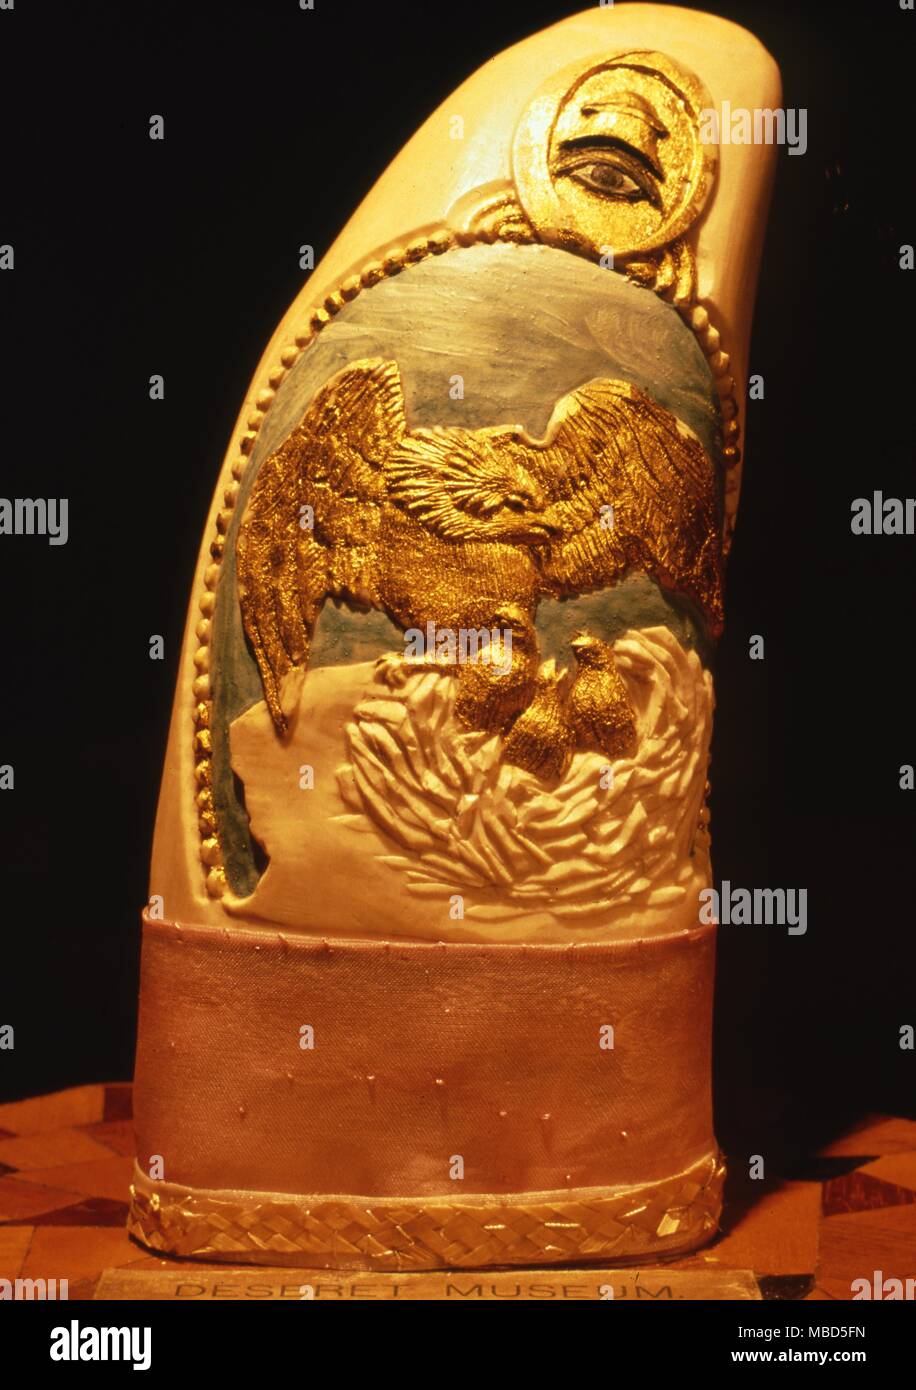 Les Mormons - dent de baleine. Dent de baleine, sculpté avec des symboles, y compris le mormon bonnet phrygien. Musée de l'histoire de l'Église et de l'Art, Salt Lake City. Banque D'Images